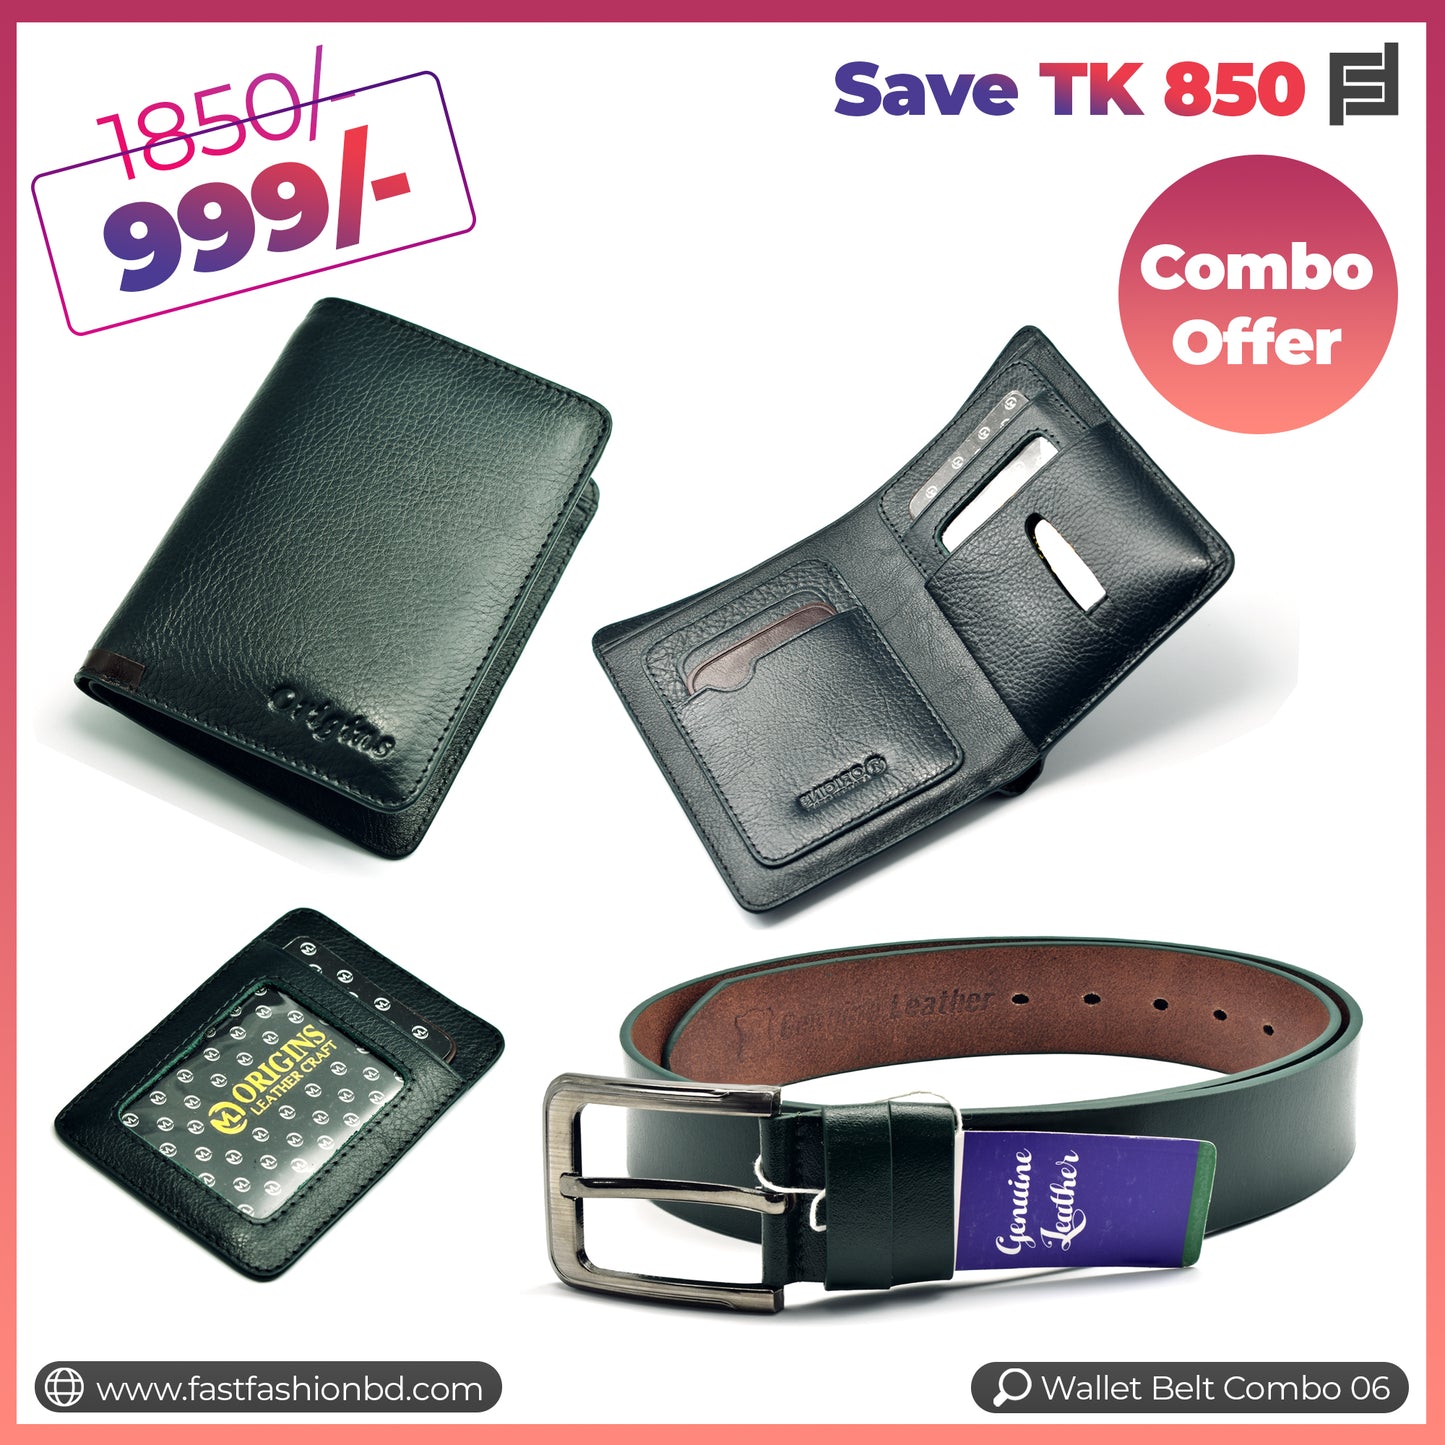 Wallet Belt Combo Offer Save TK 850 - Wallet Belt Combo 06